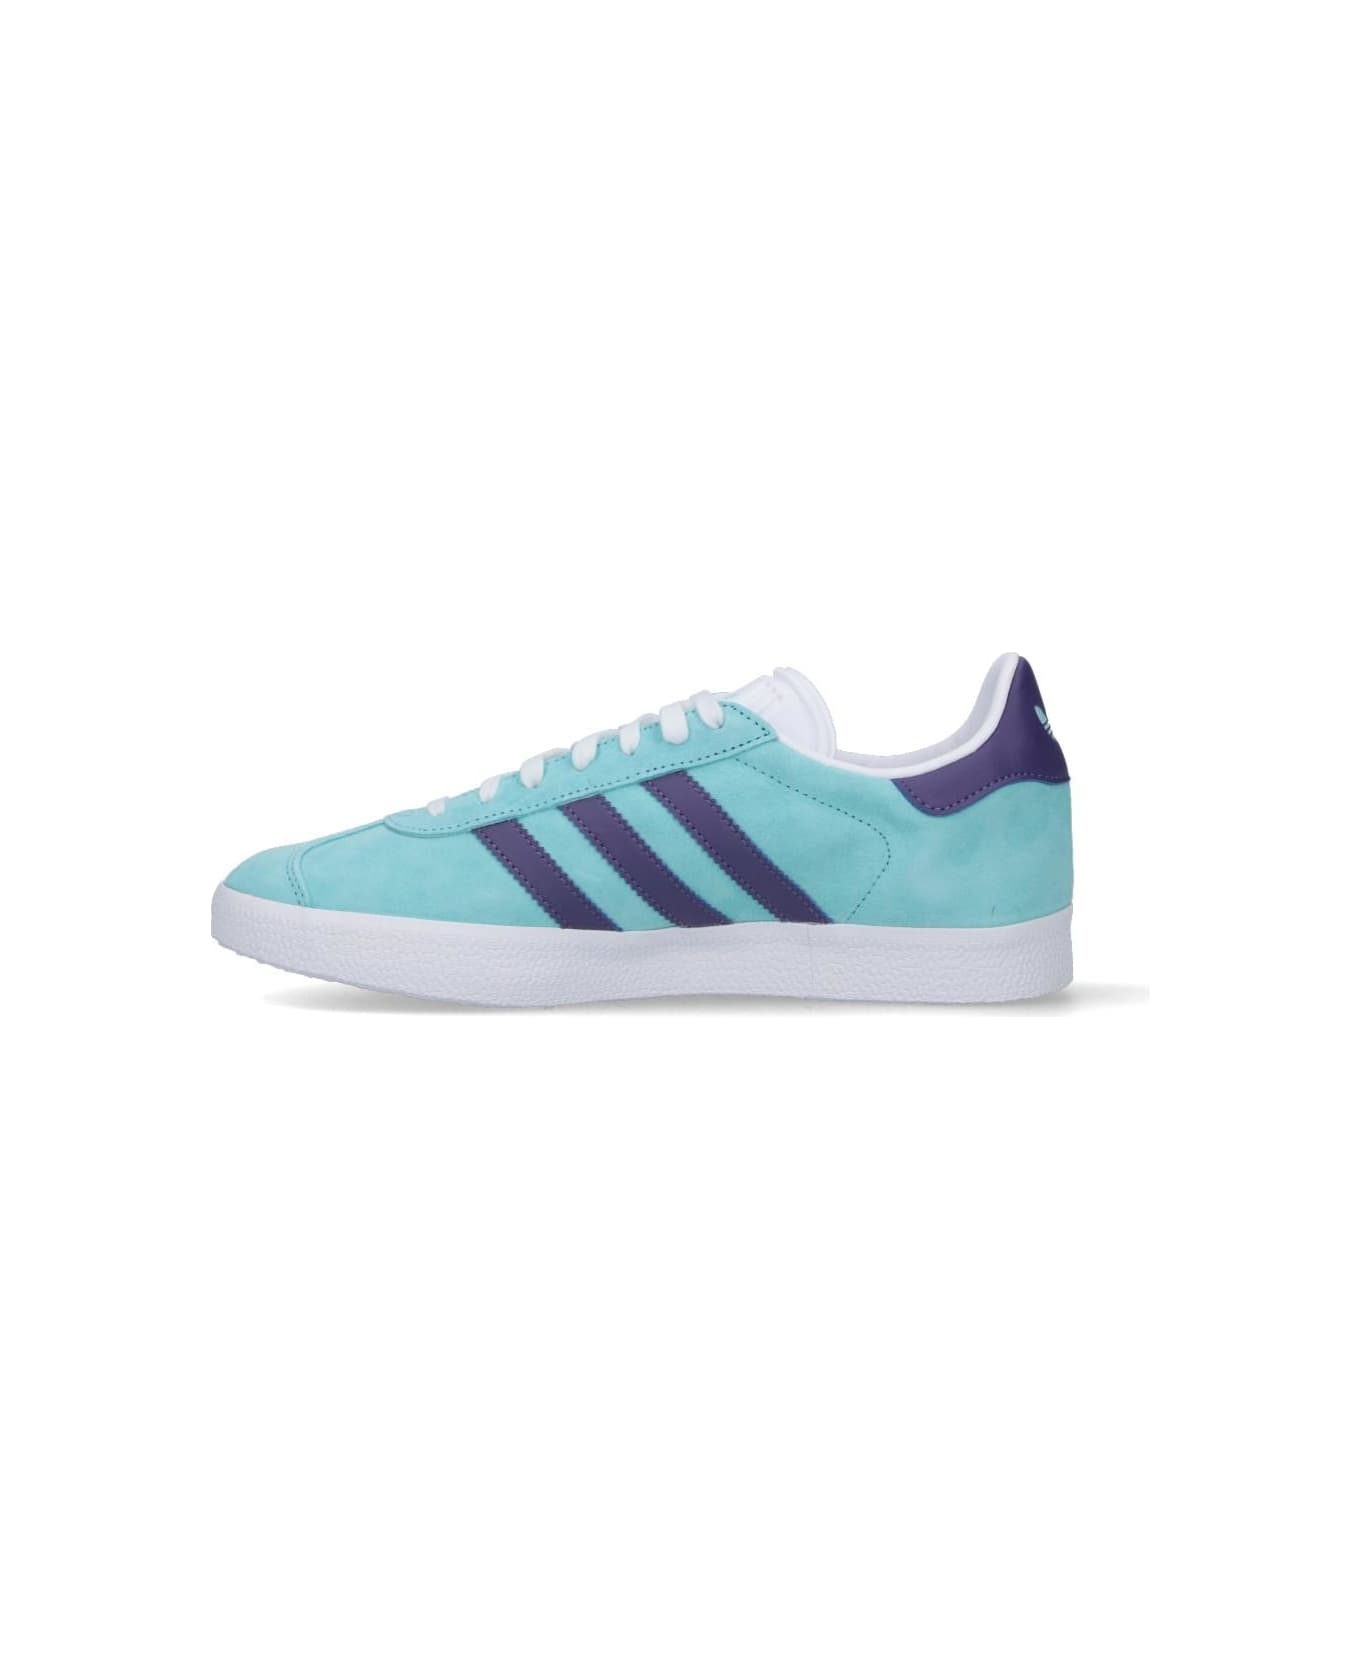 Adidas Originals Gazelle Sneakers - Light Blue スニーカー